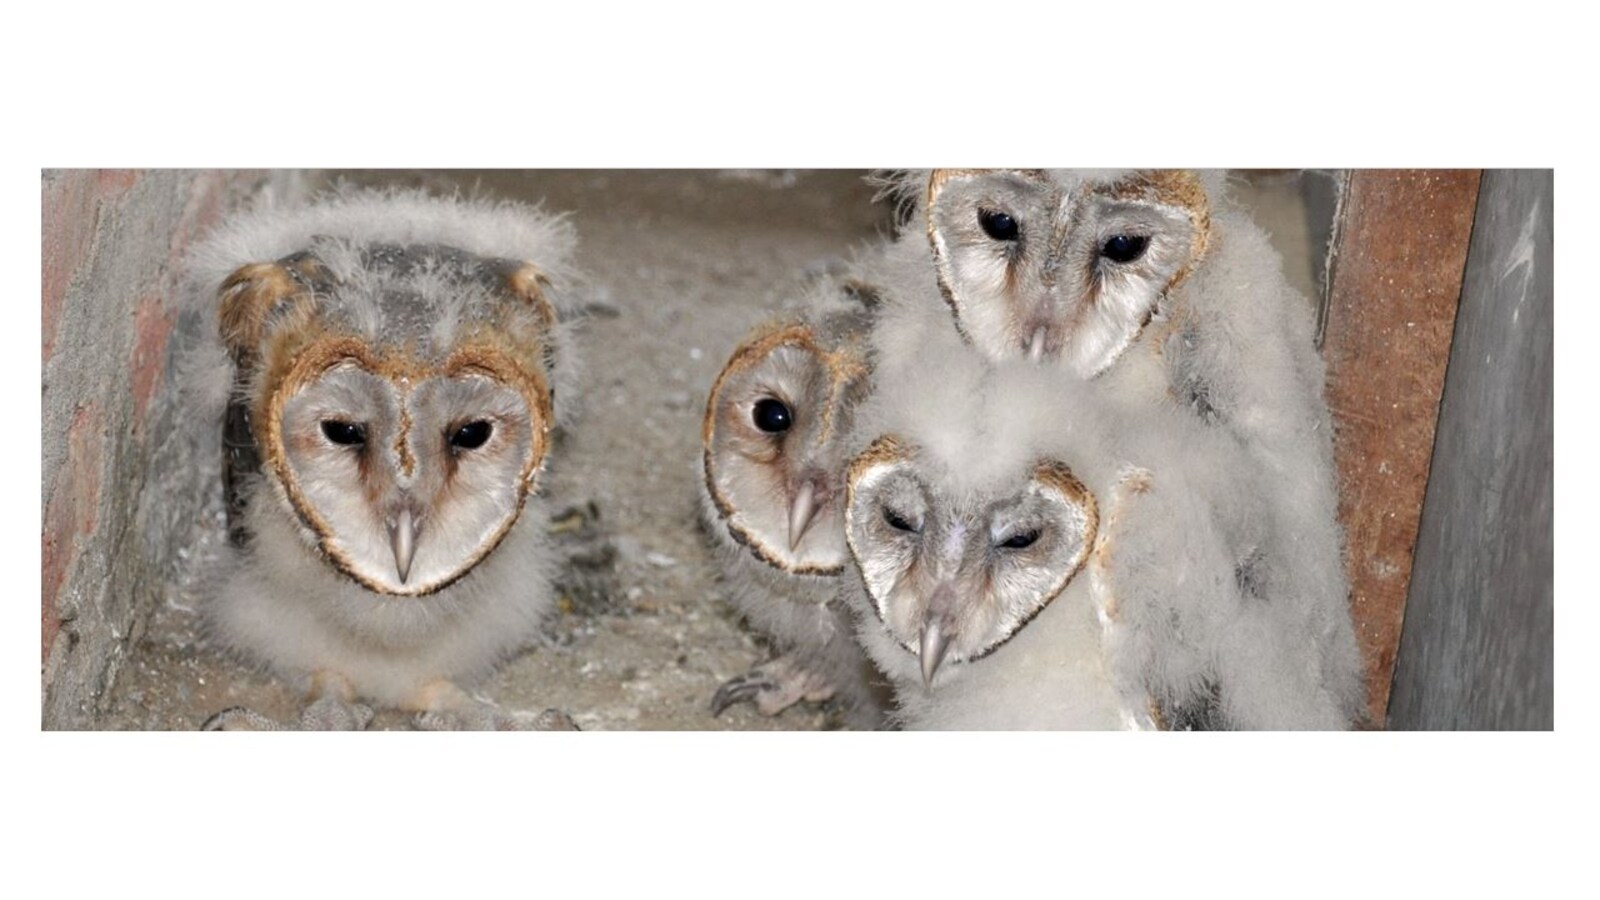 US ONLY - 10 Medium Barn Owl Pellets